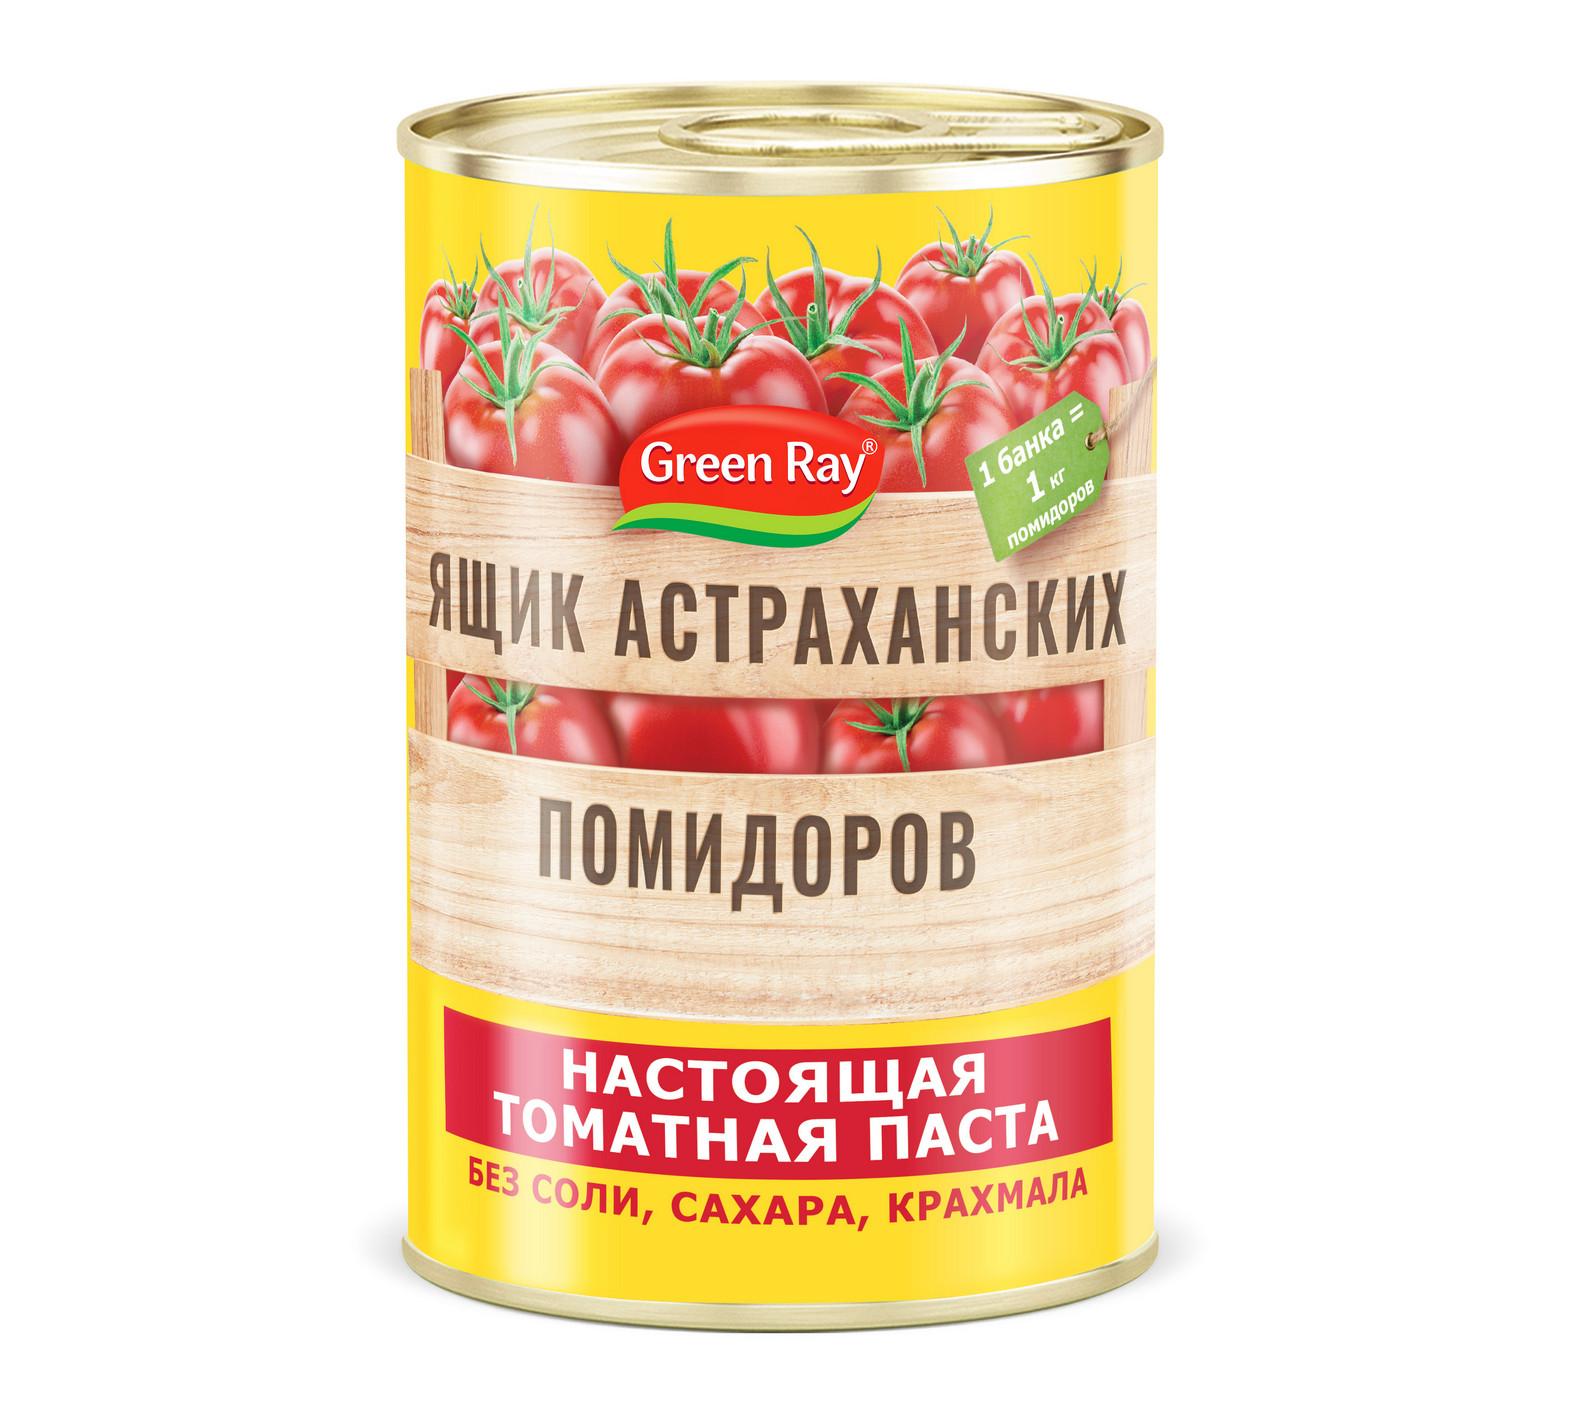 Томатная паста Ящик астраханских помидоров 140 г